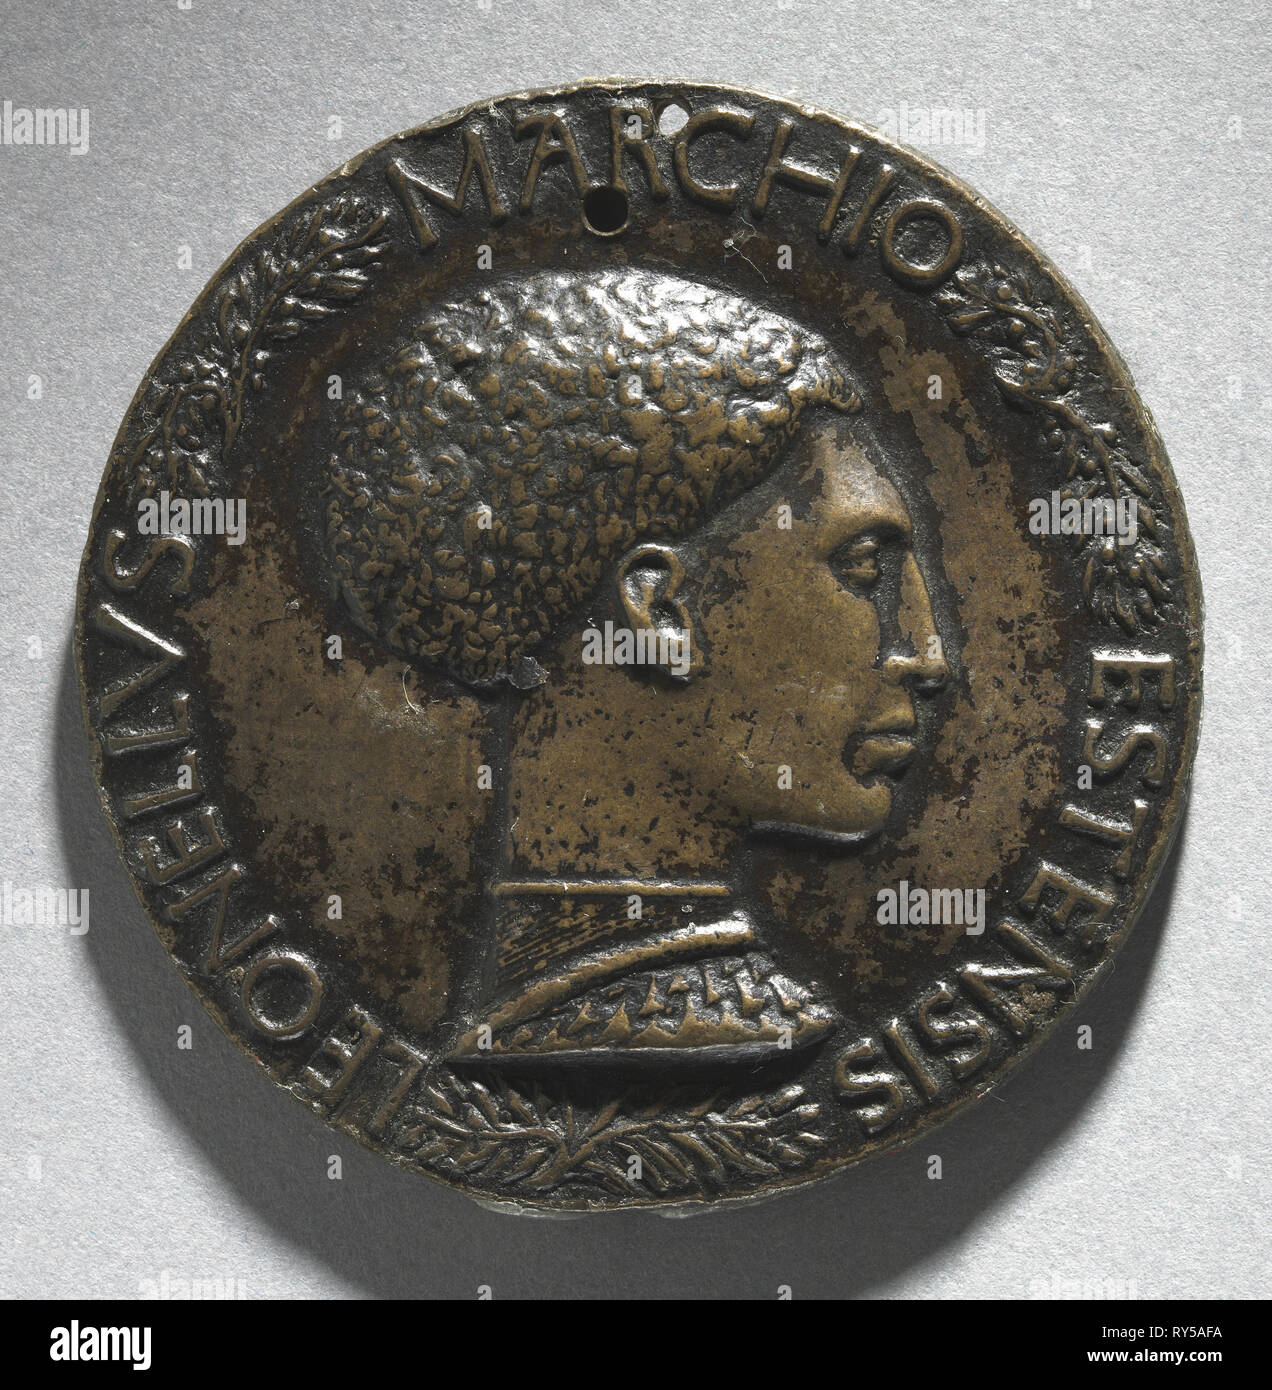 Portrait de Leonello D'Este, Marquis de Ferrare (avers), ch. 1440-1444. Pisanello (Italien, Ferrara, ch. 1395-1455). Bronze ; diamètre : 7 cm (2 3/4 po Banque D'Images